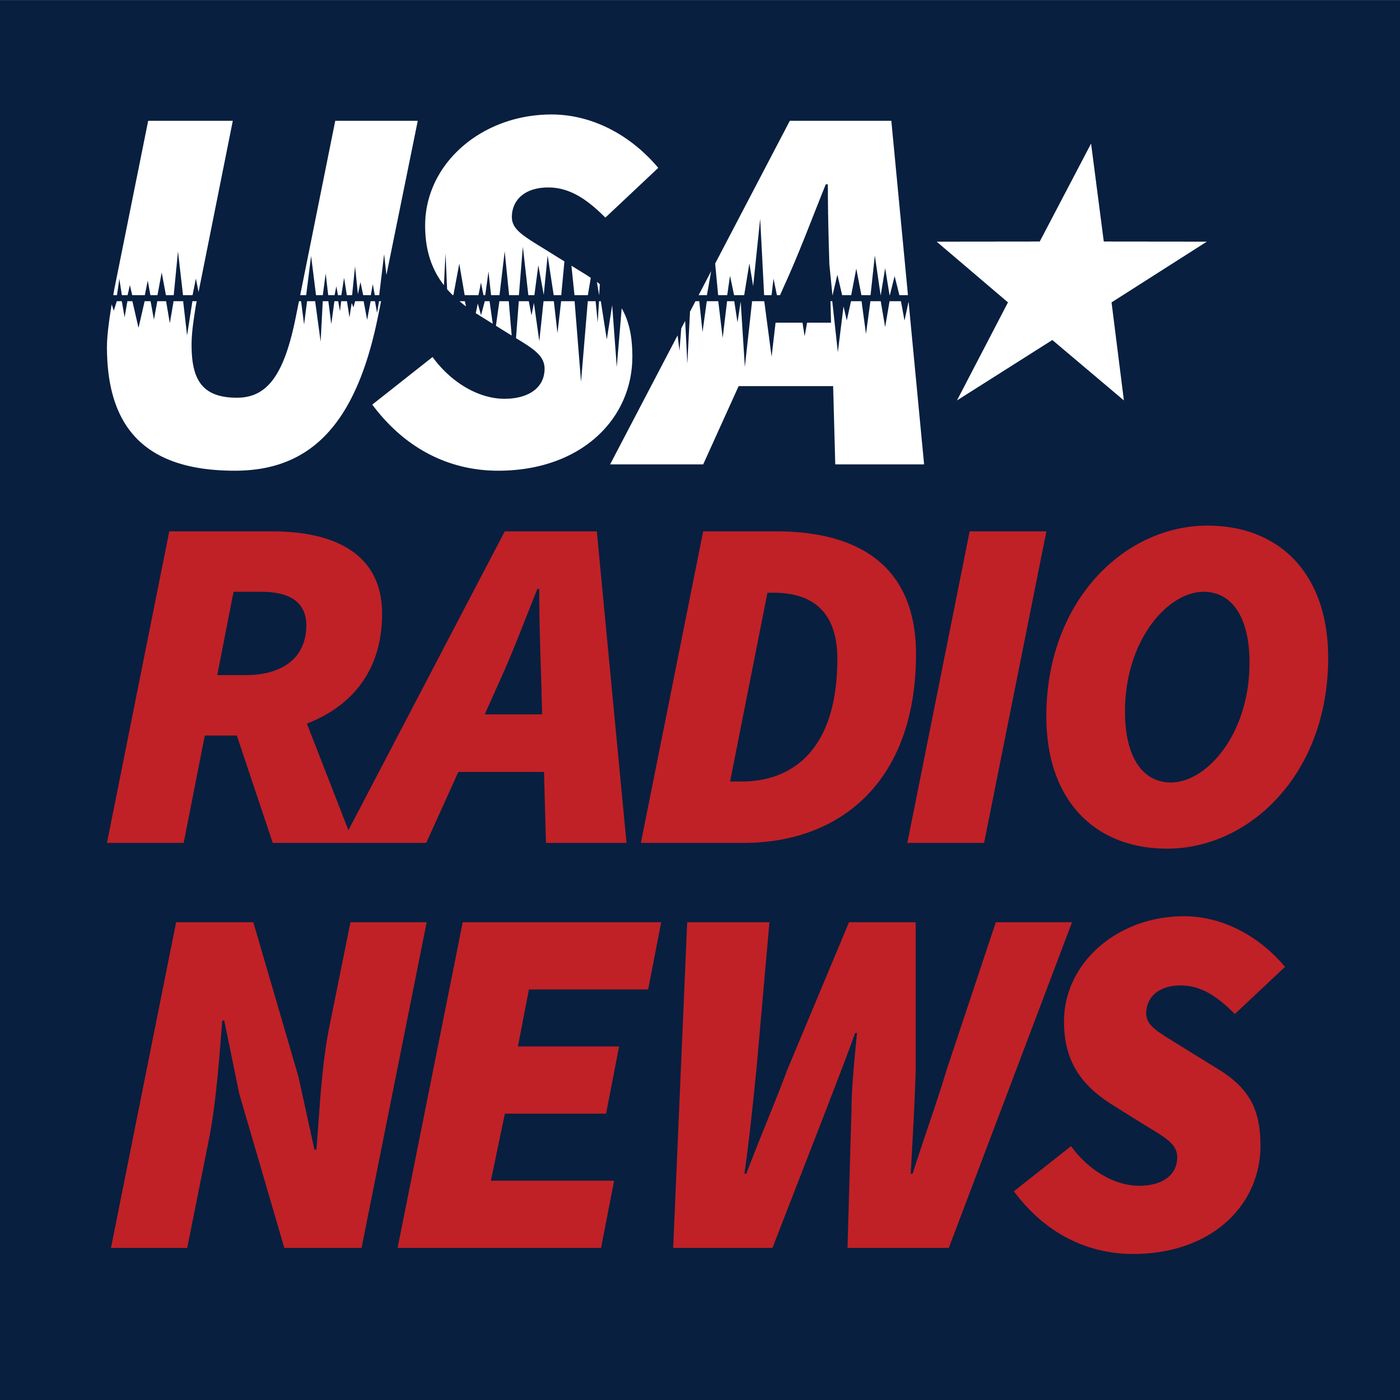 USA Radio News 011522 Hour 23